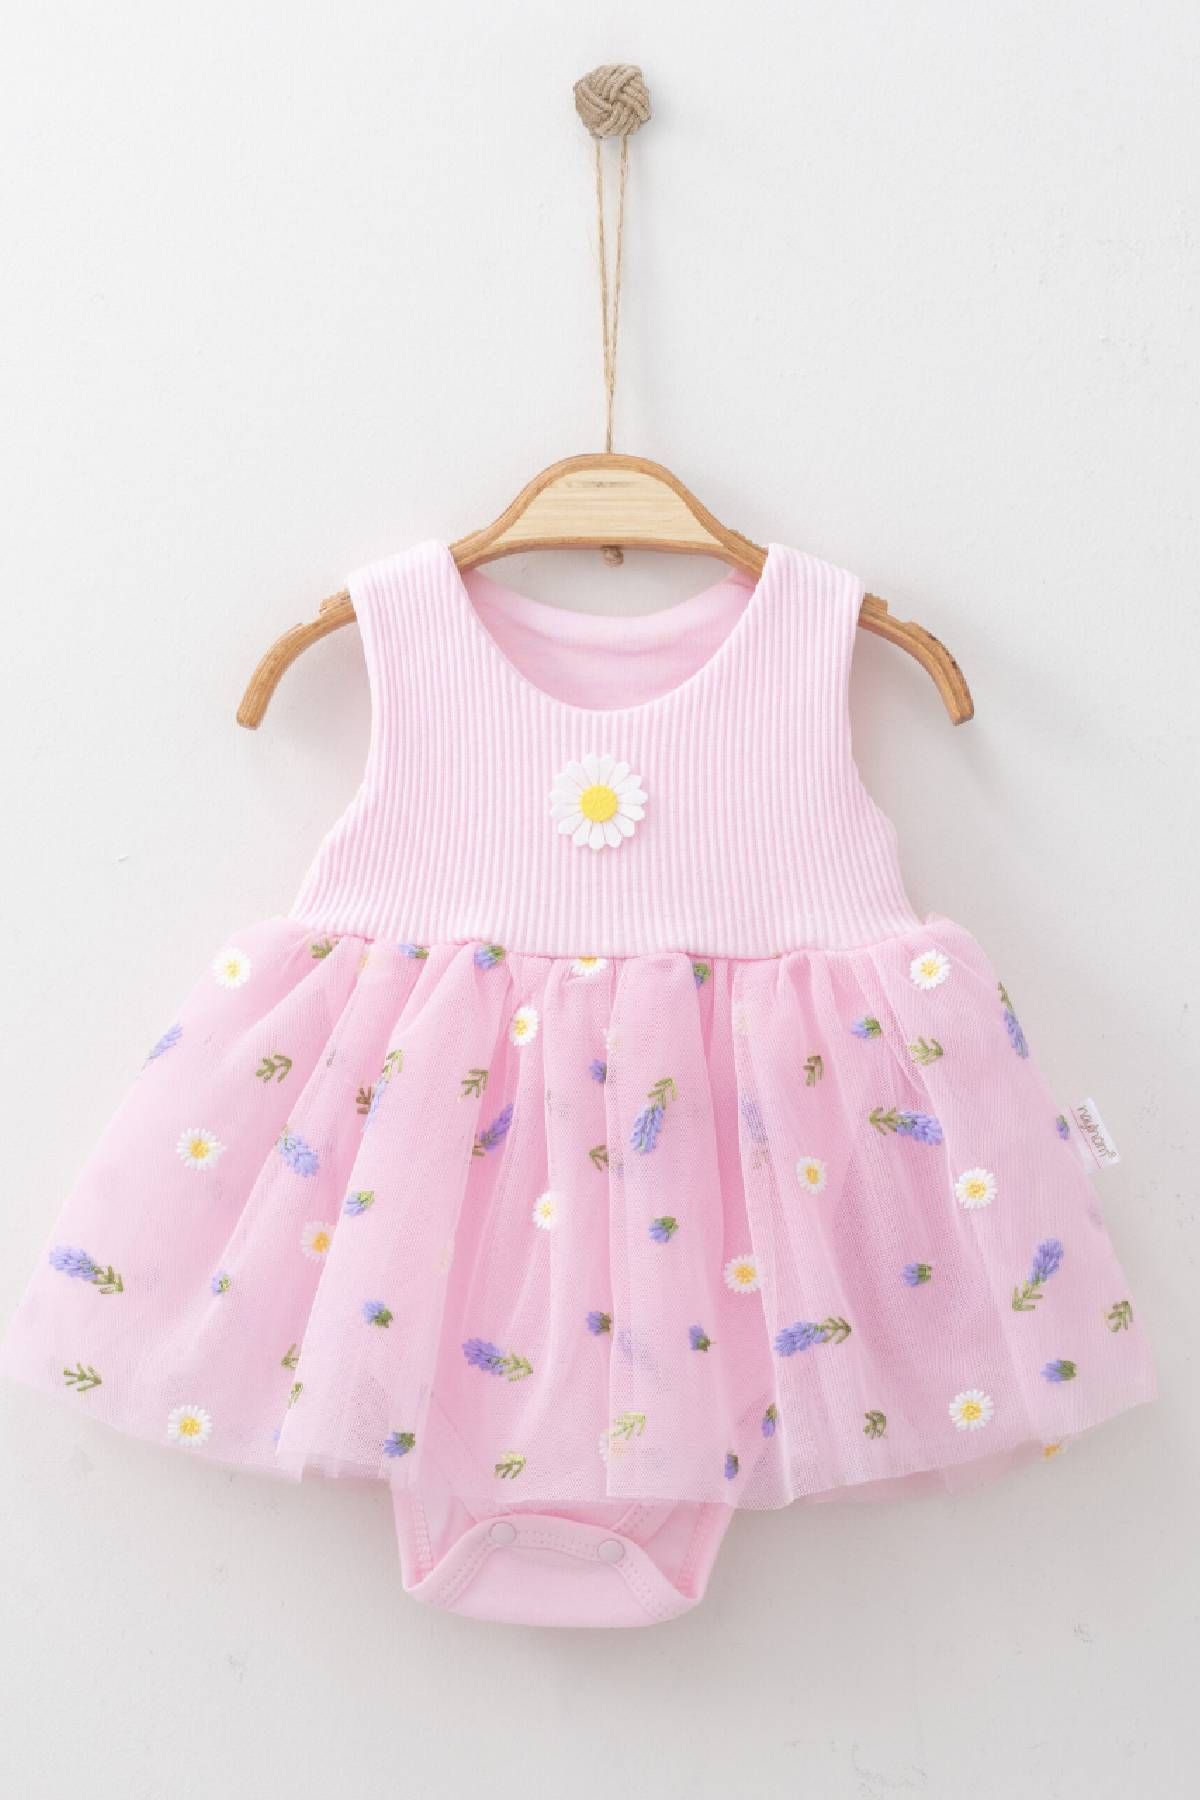 VERONA TARZ Kız Bebek Çıtçıtlı Alt Elbise Tek Parça Yazlık Bayramlık Yeni Sezon Çiçek Desenli